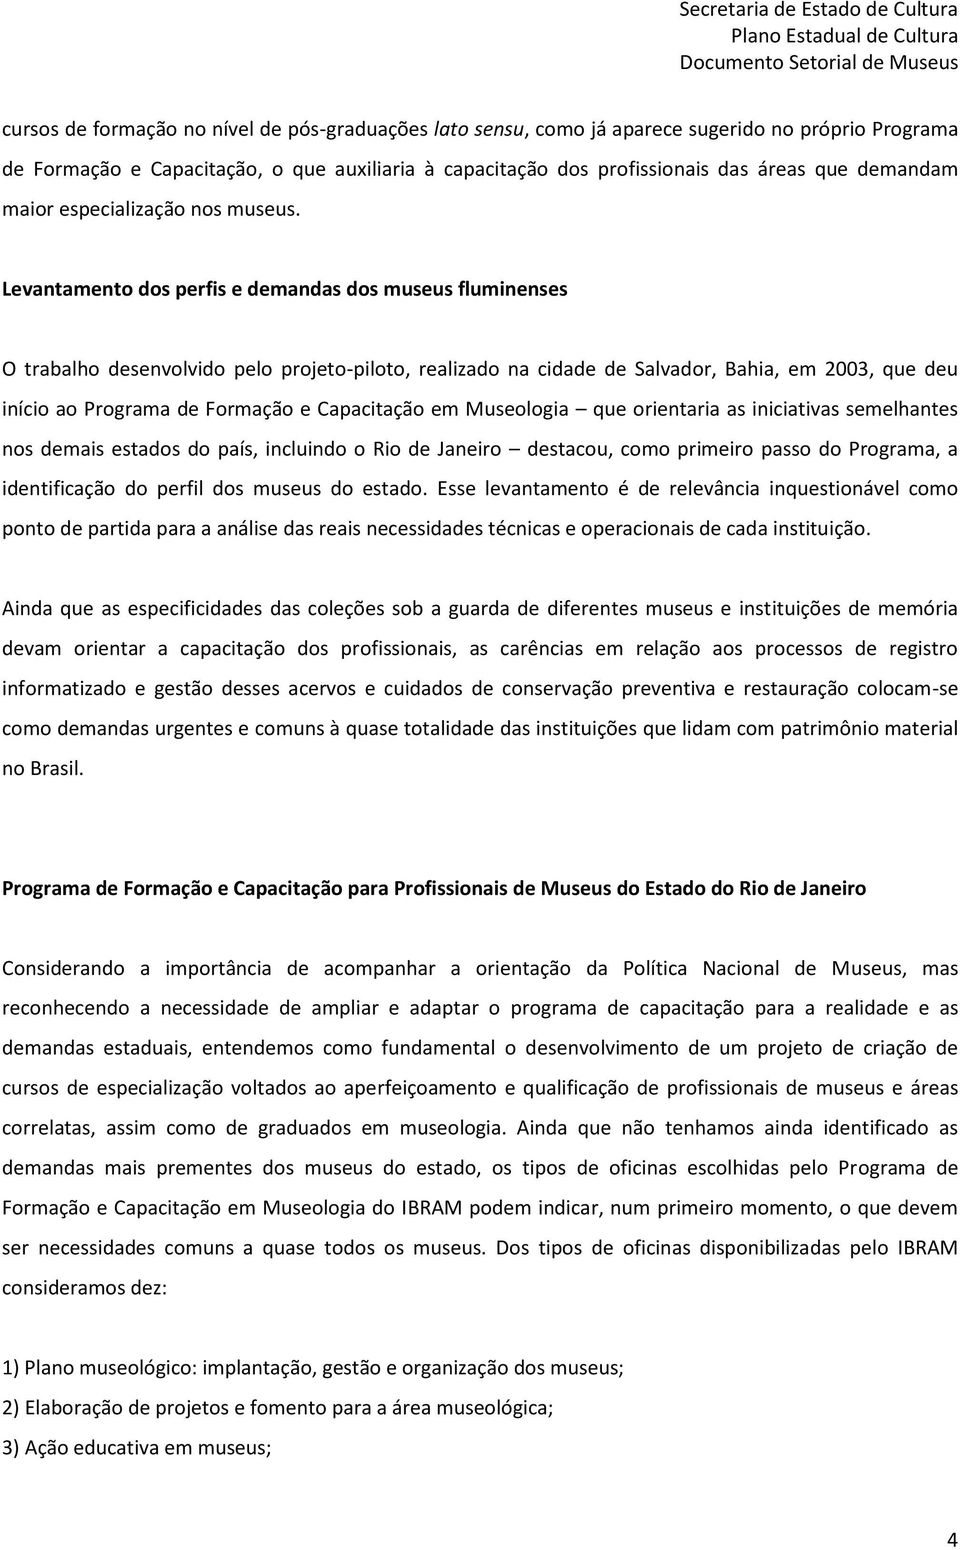 Levantamento dos perfis e demandas dos museus fluminenses O trabalho desenvolvido pelo projeto-piloto, realizado na cidade de Salvador, Bahia, em 2003, que deu início ao Programa de Formação e